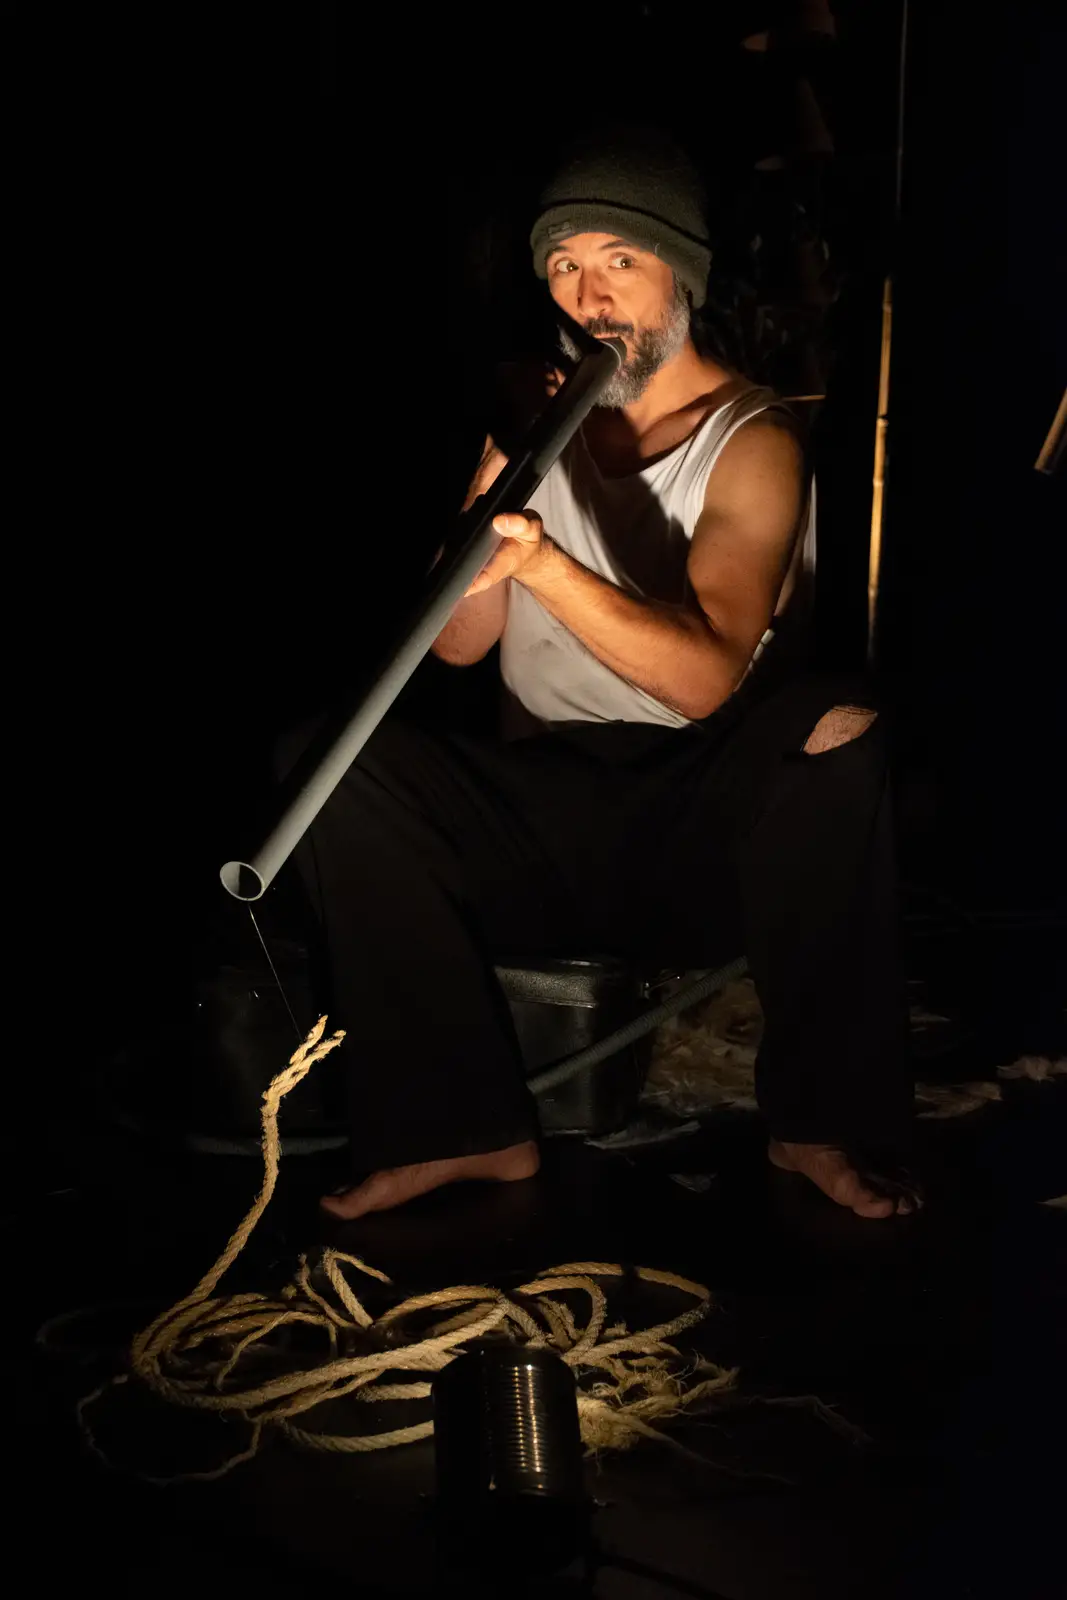 Ajnab charmeur de serpent joue de la flûte en PVC